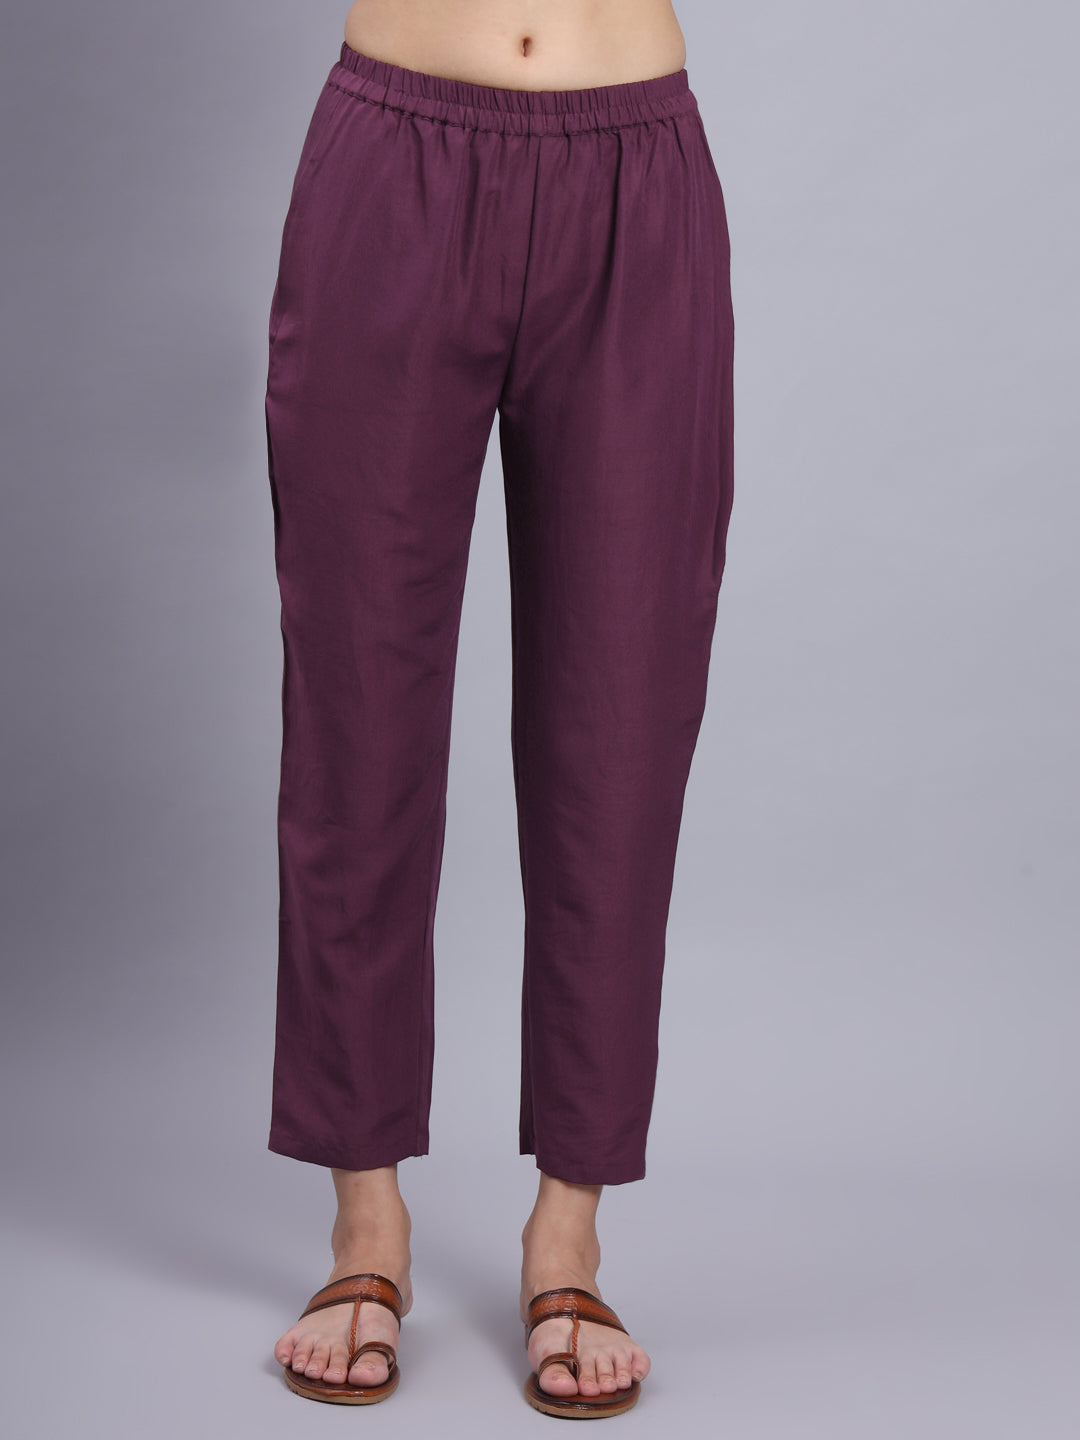 Purple Cotton Co-Ord Sets